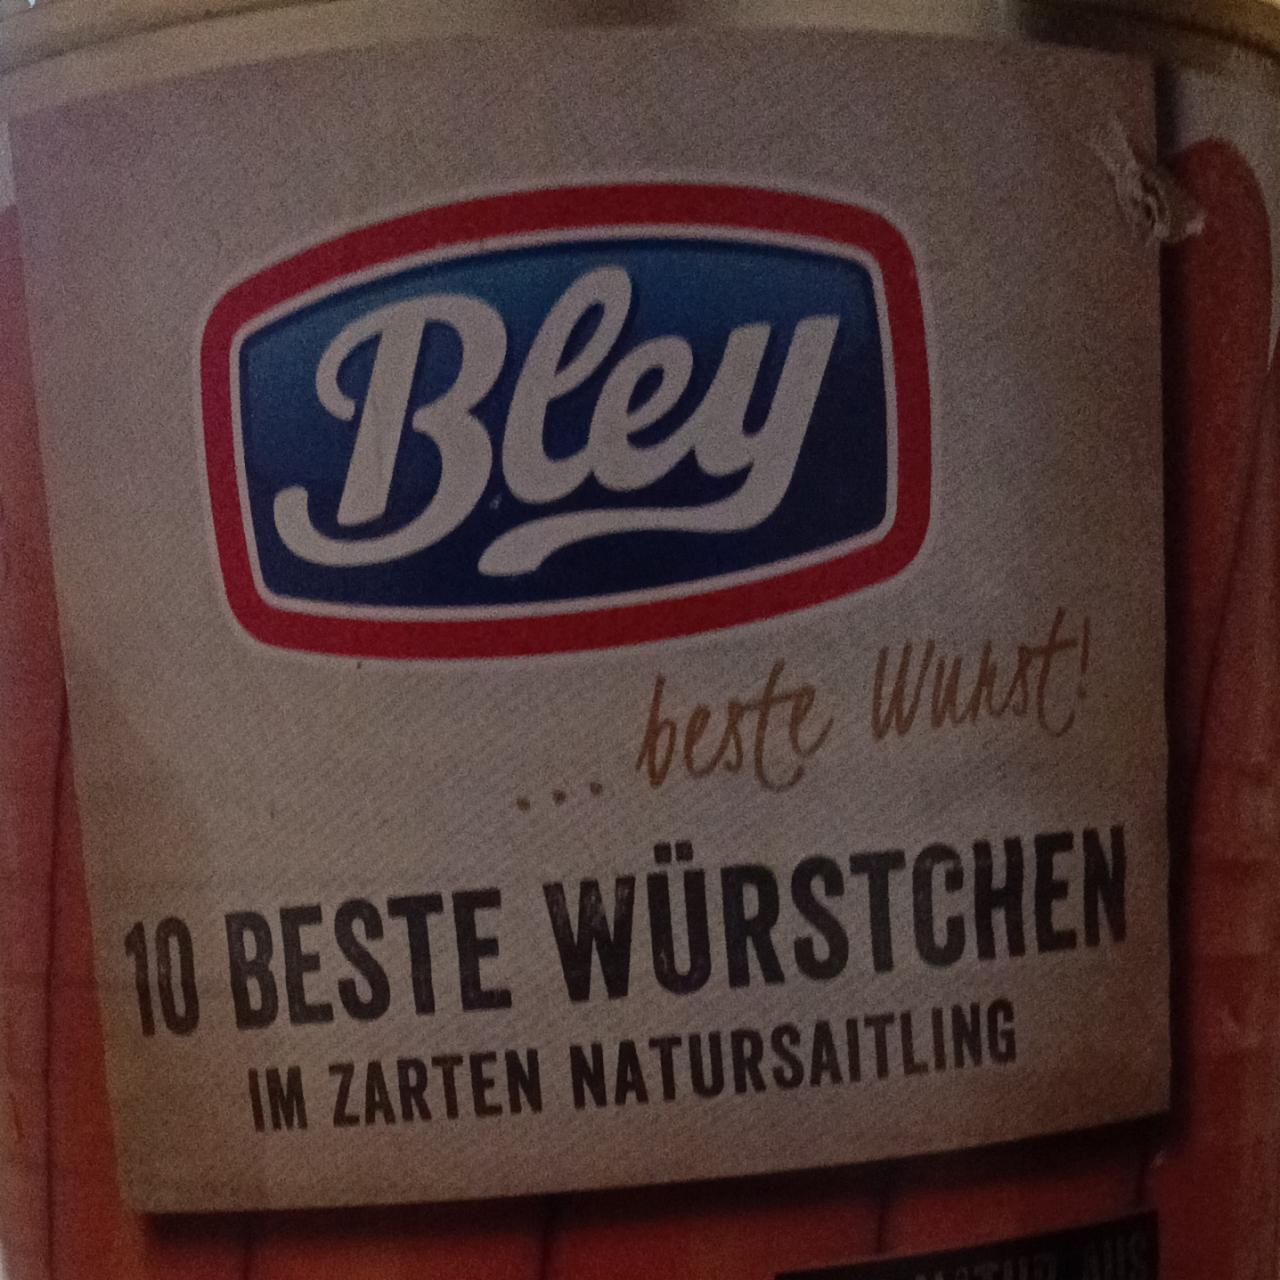 Фото - сосиски консервированные beste wurstchen Bley